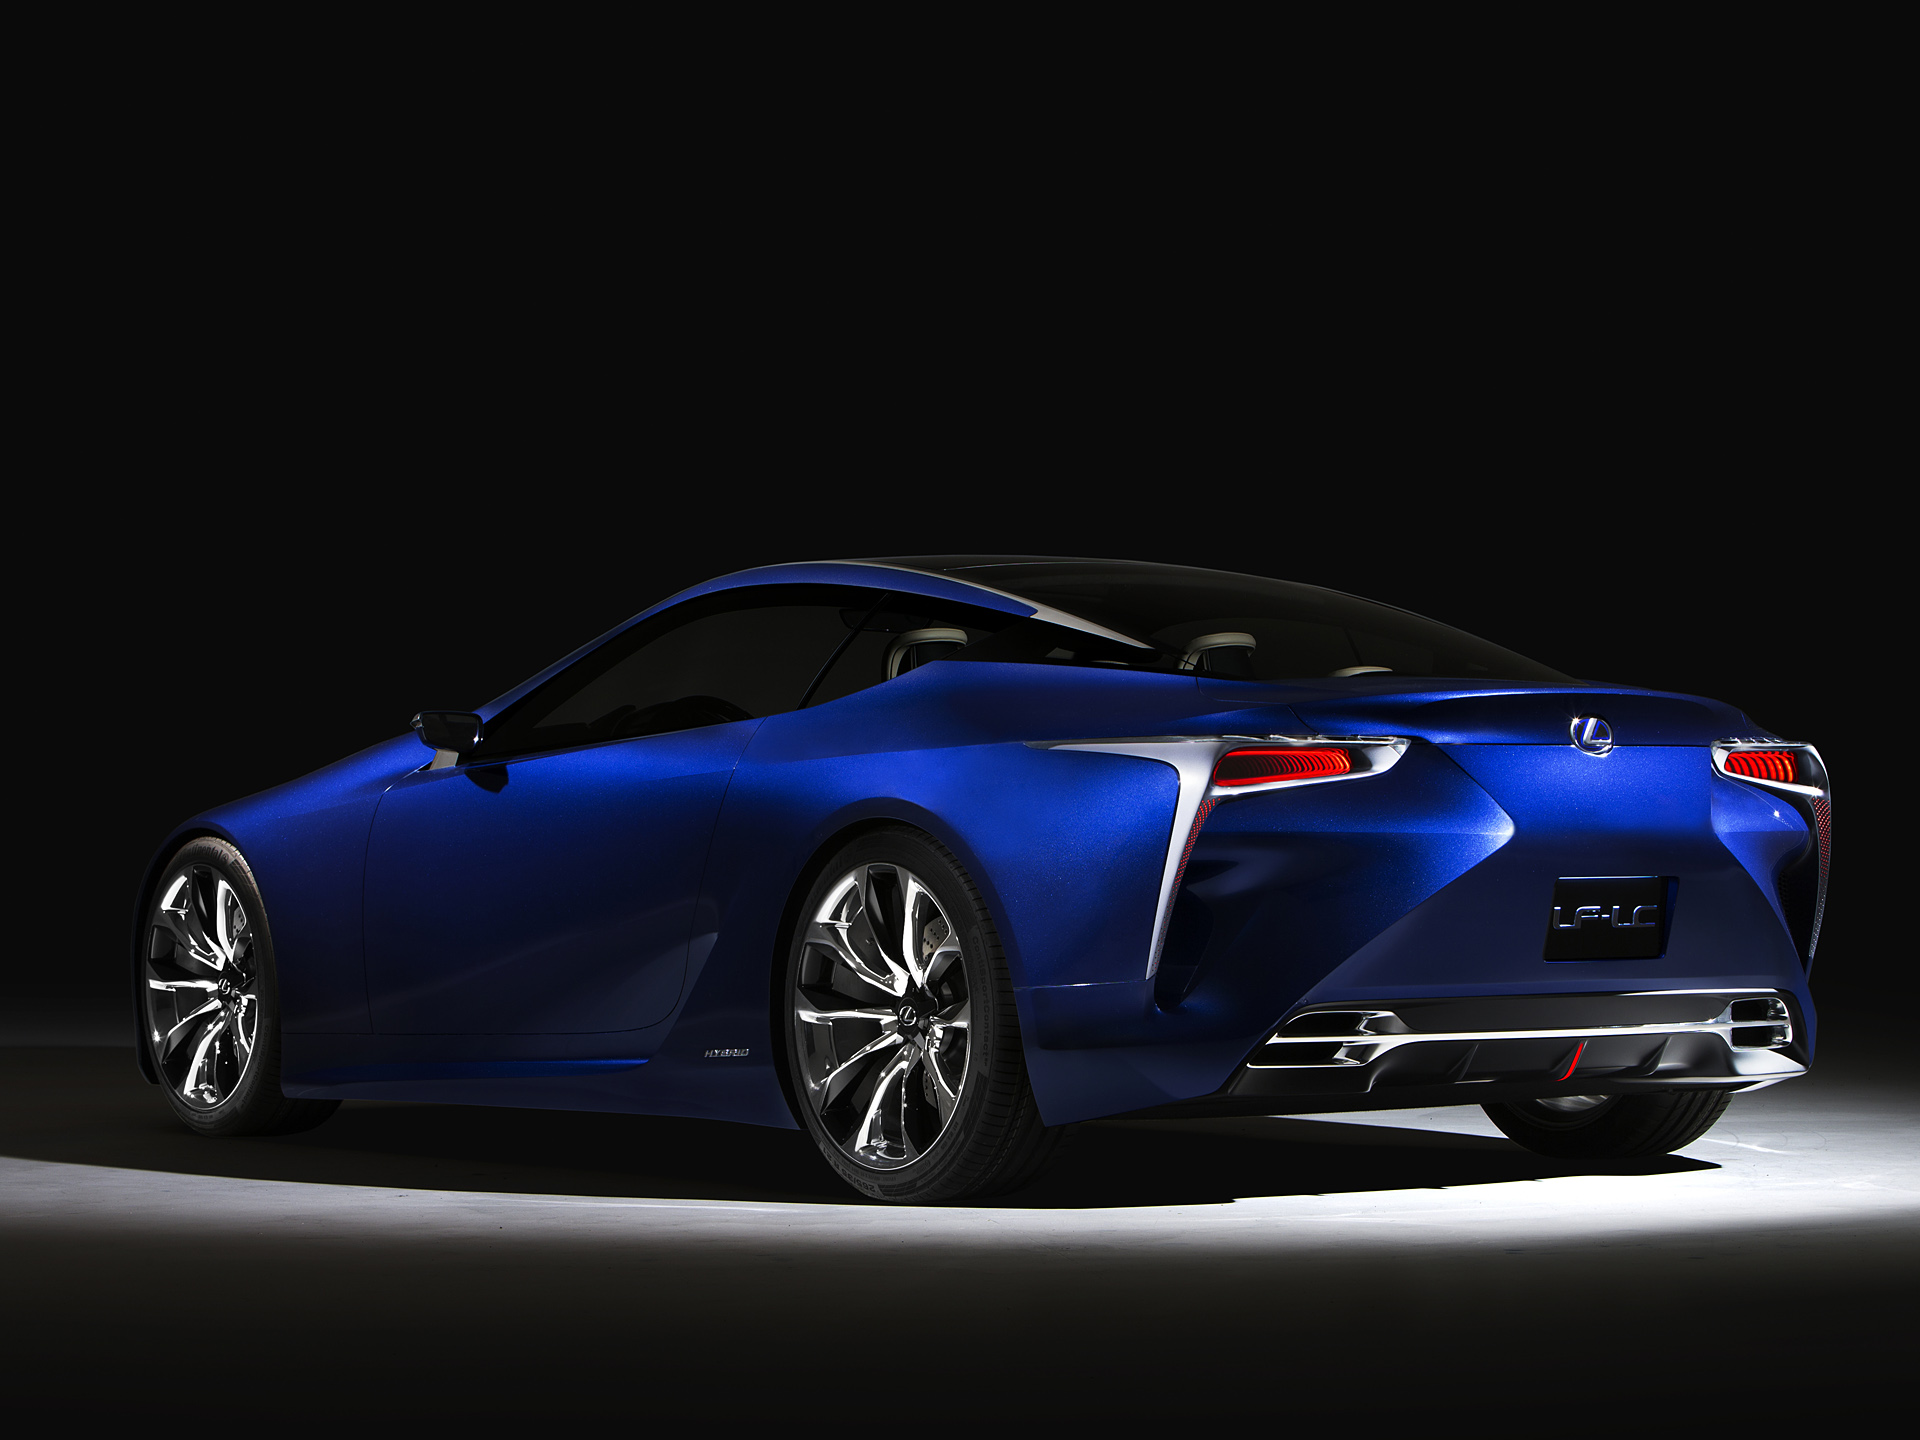  2012 Lexus LF-LC Blue Concept Wallpaper.